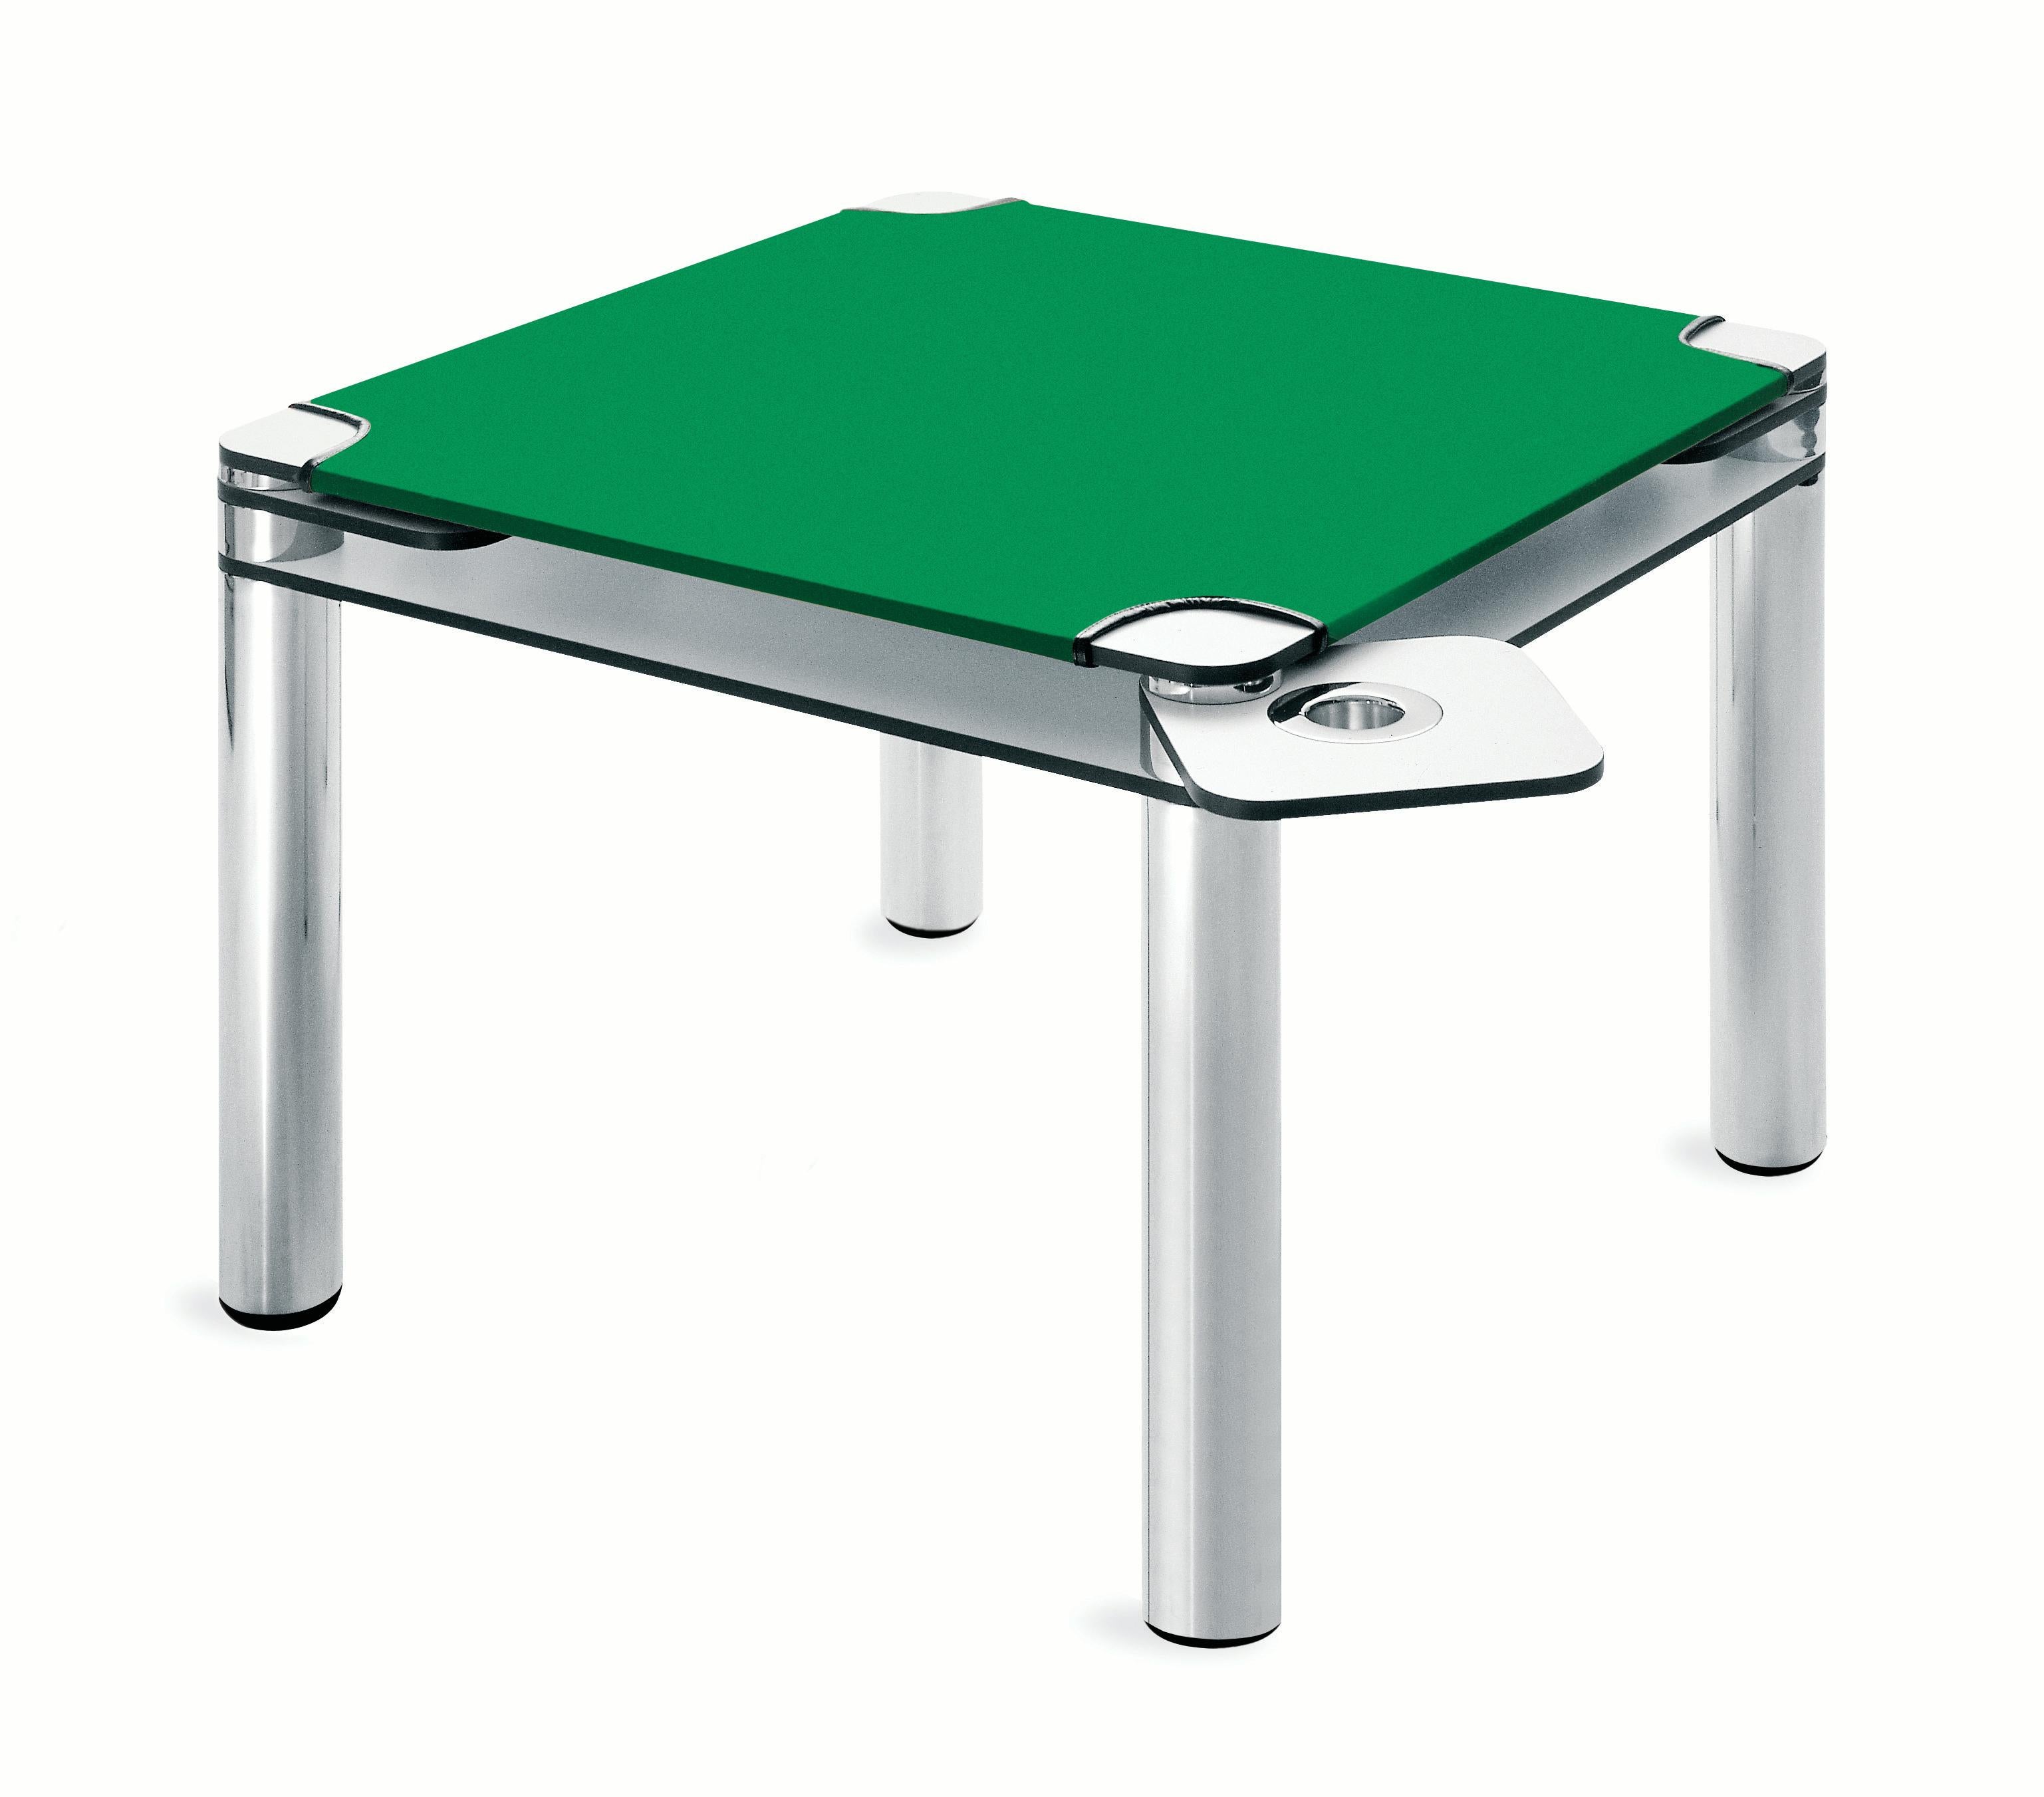 Zanotta Pokertisch mit doppelter Platte aus weißem Kunststofflaminat und grünem Baize-Leder von Joe Colombo

Doppelte Platte aus 9/16